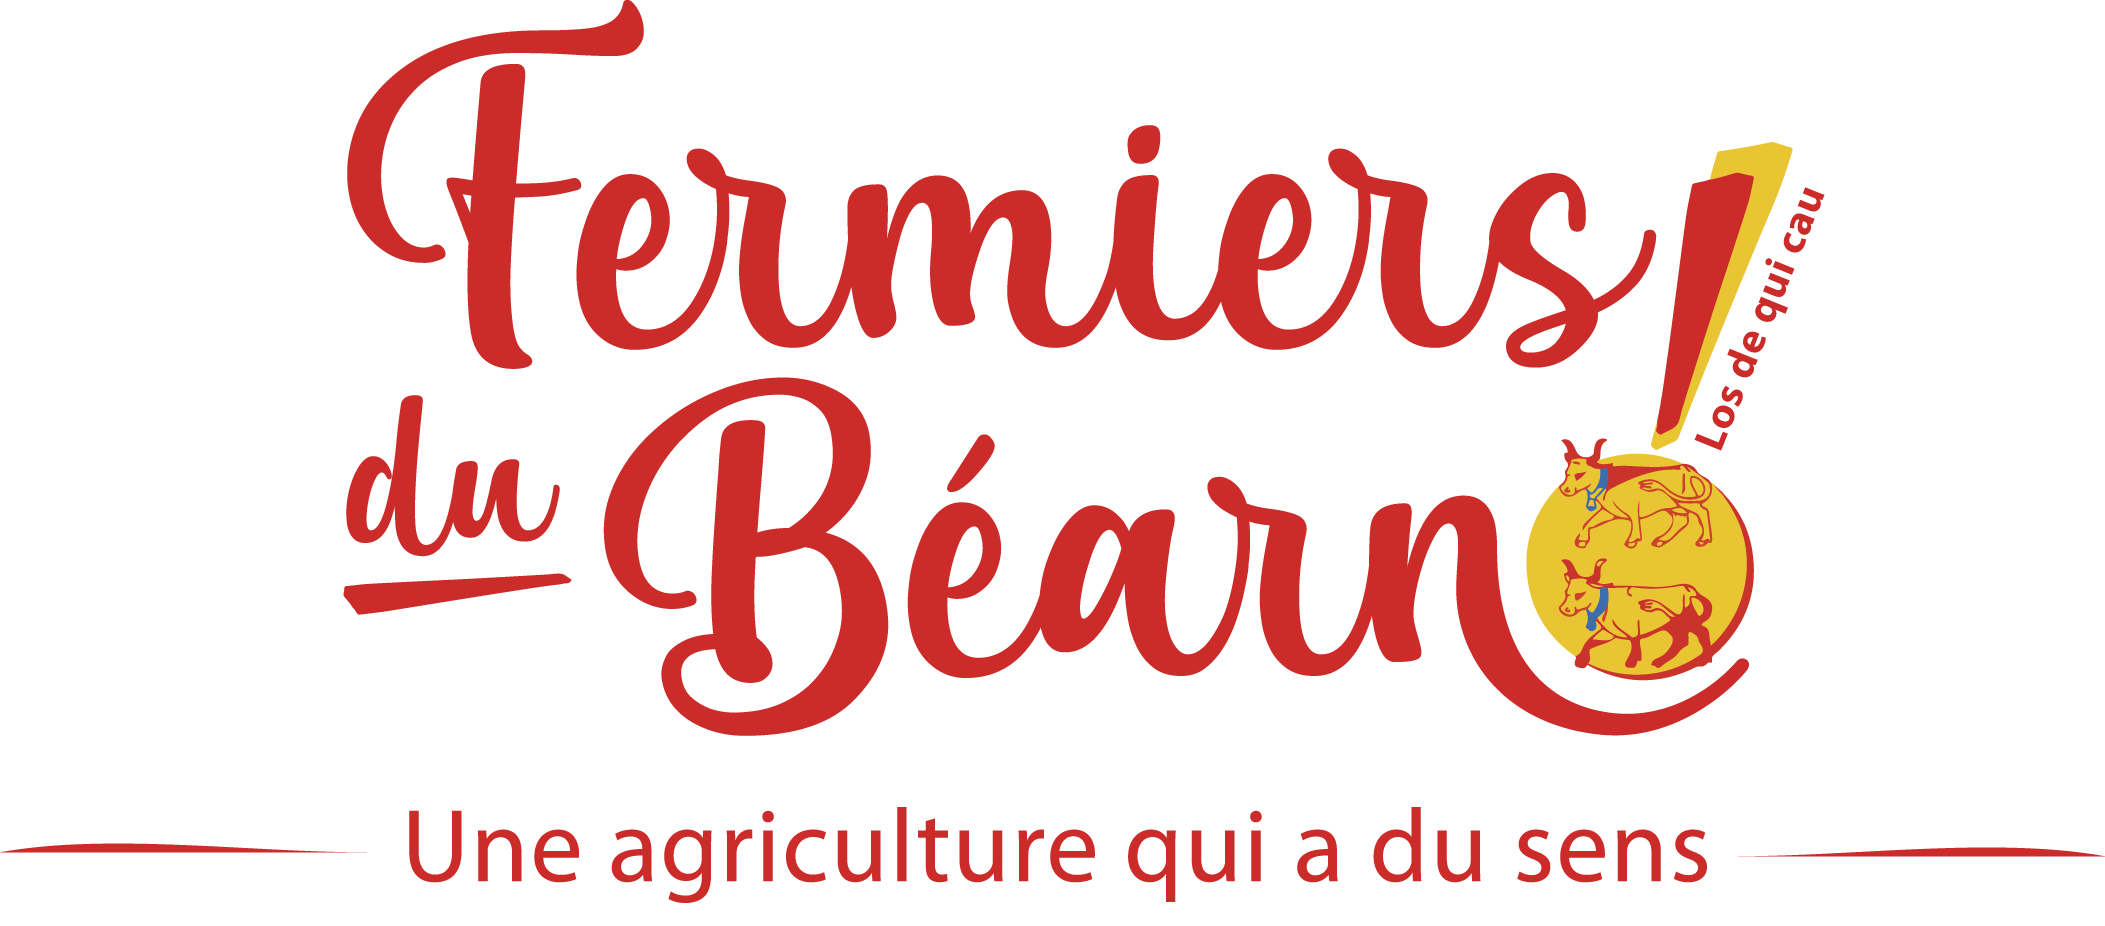 Fermiers du Béarn